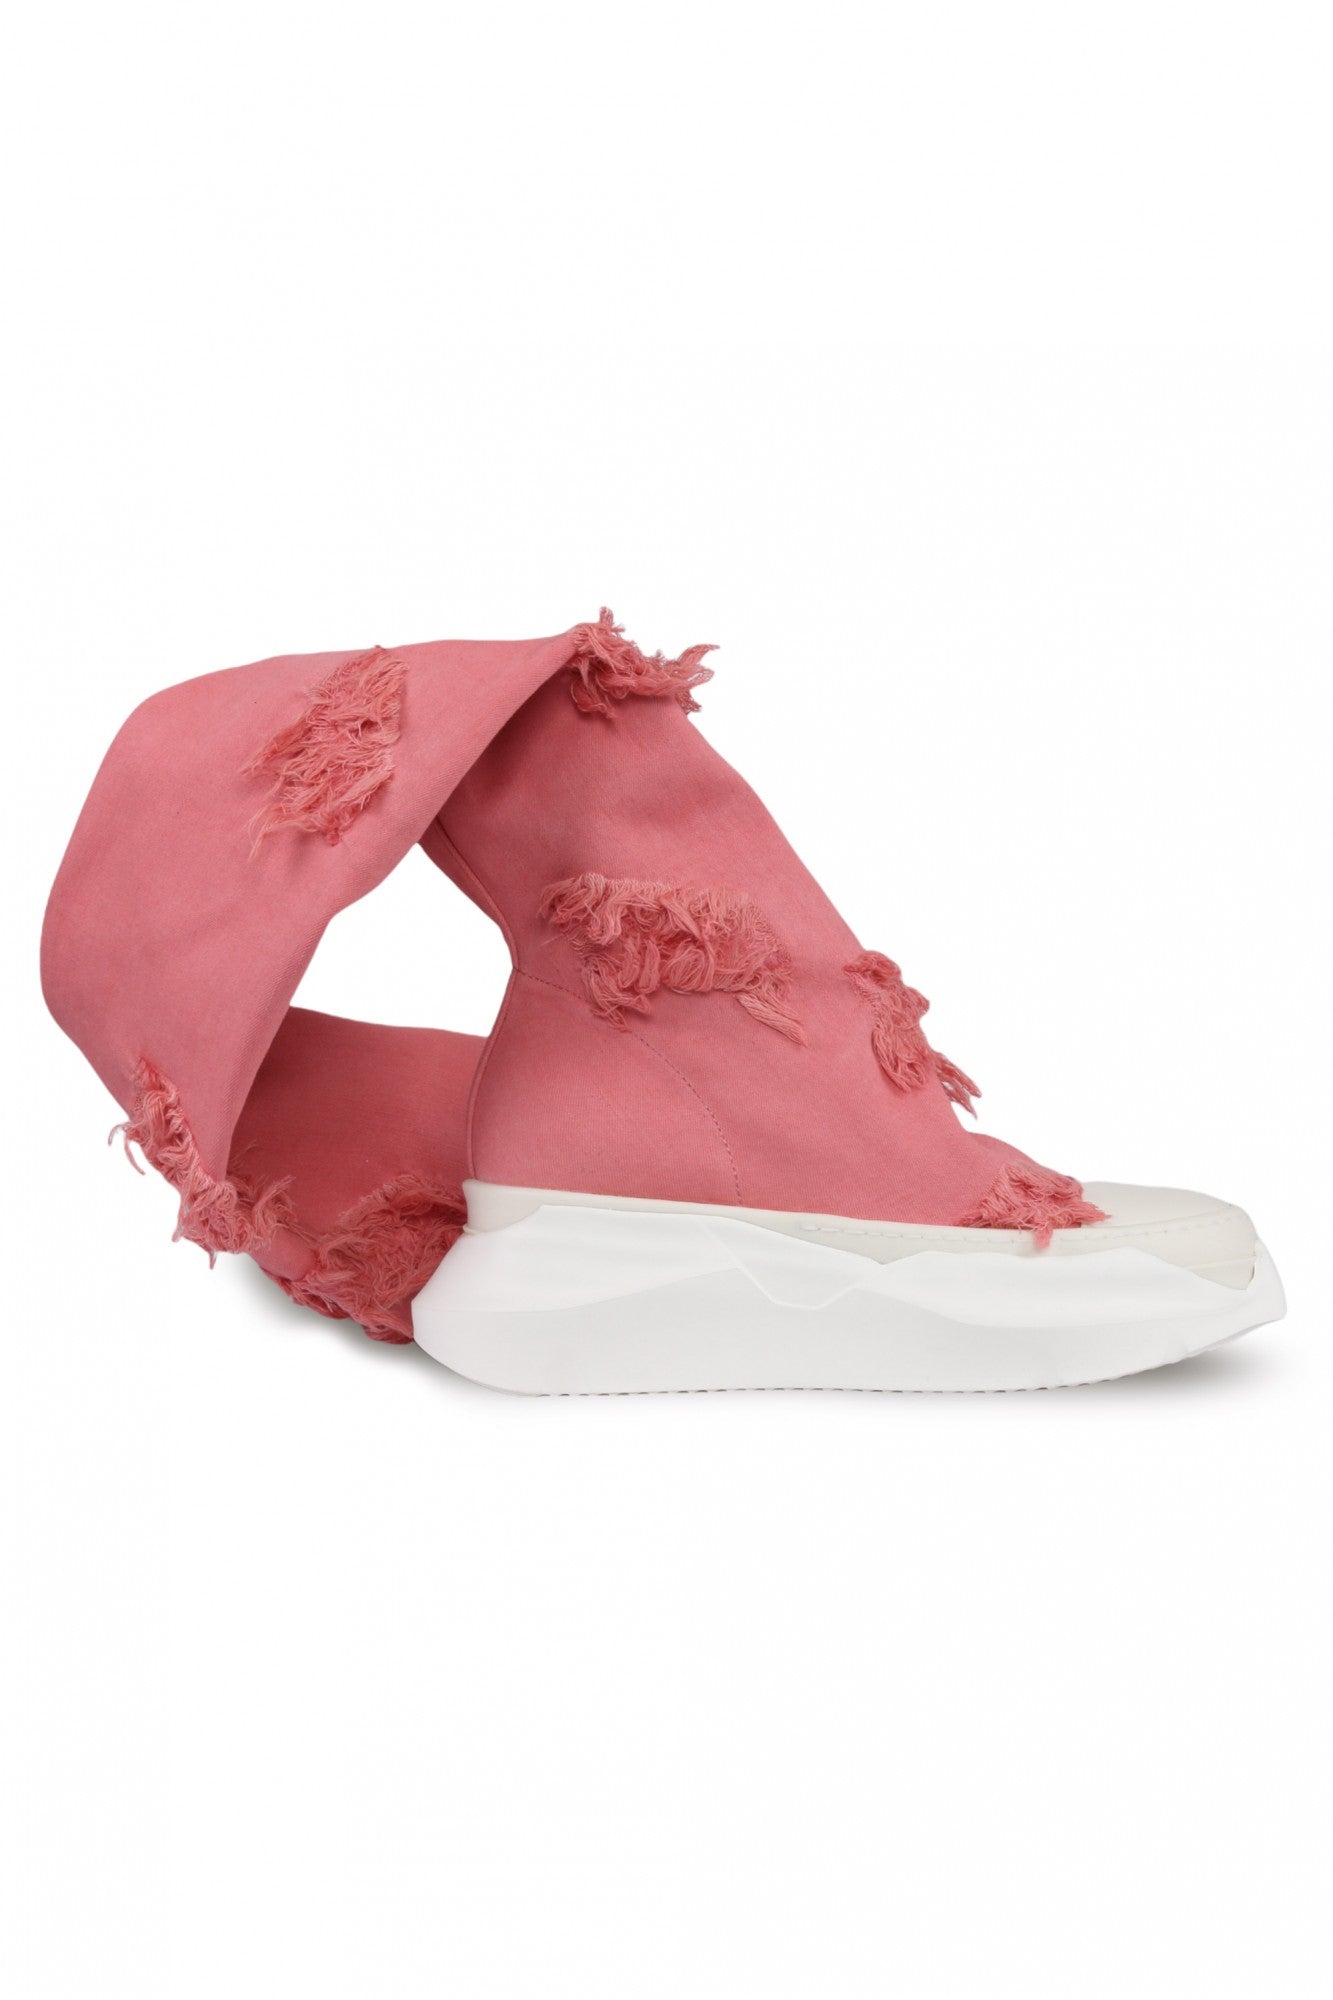 Rick Owens DRKSHDW Pink Distressed Abstract Socks Sneakers